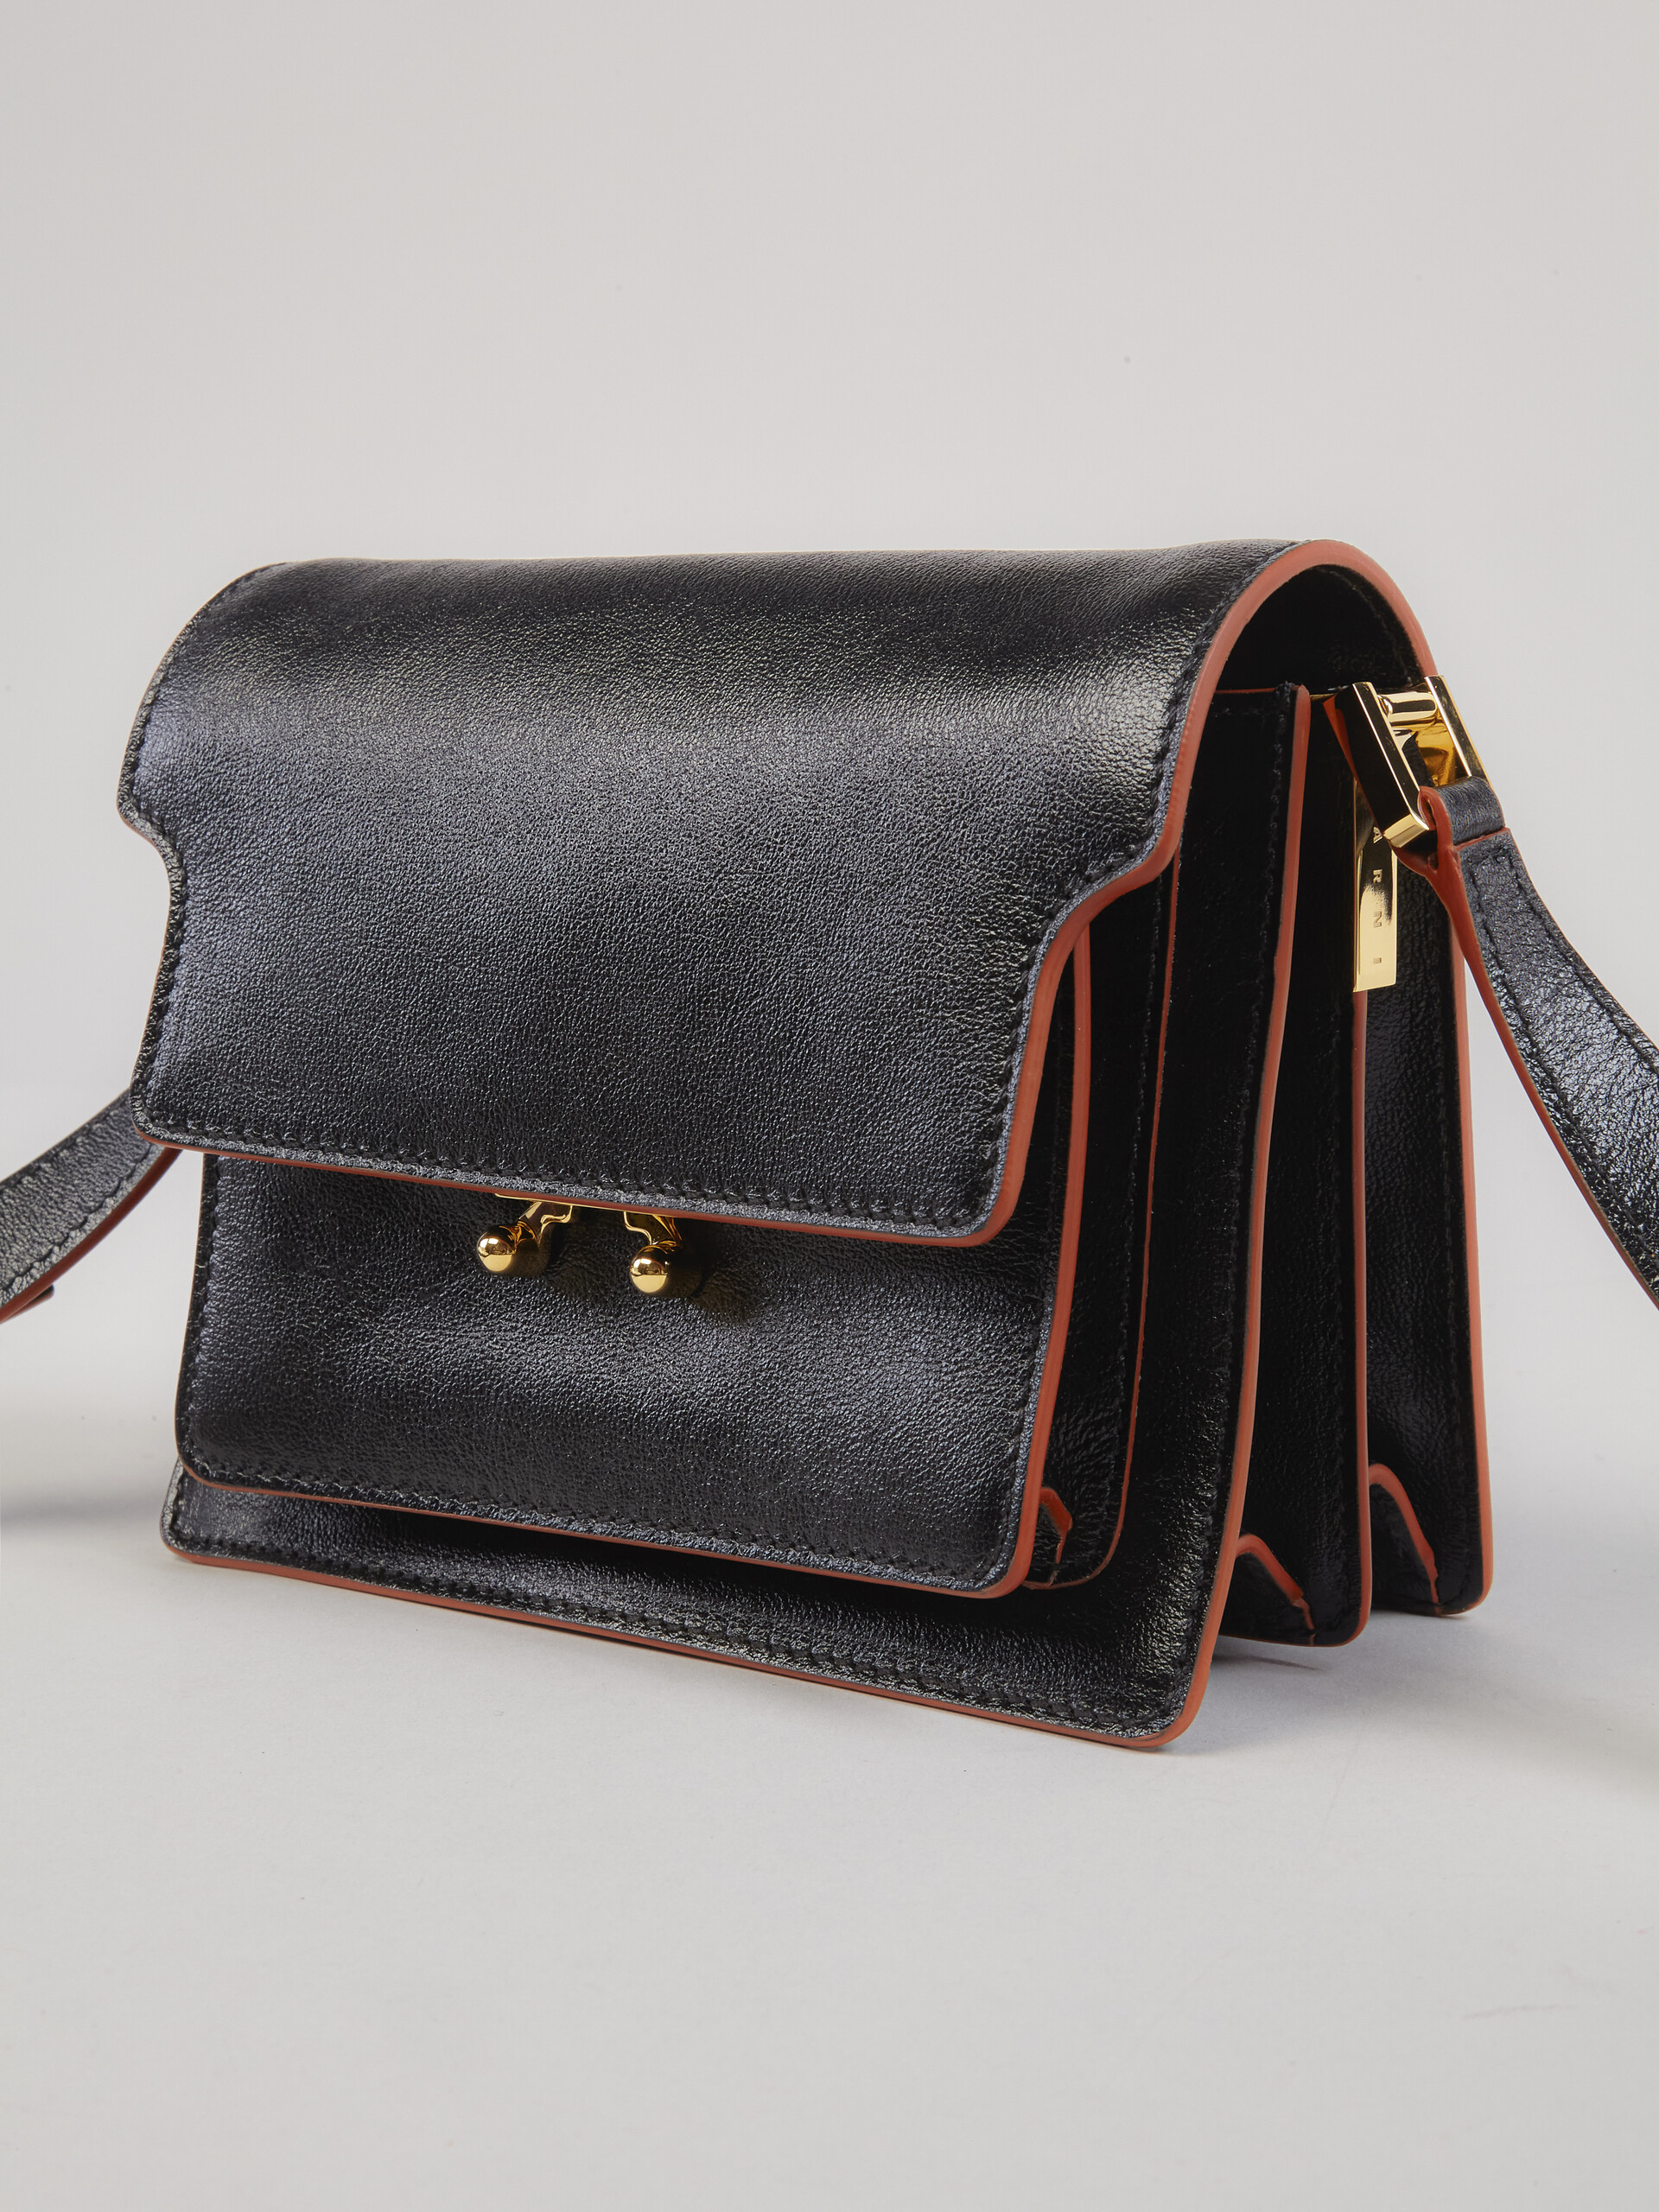 TRUNK SOFT mini bag in green leather - Shoulder Bag - Image 4